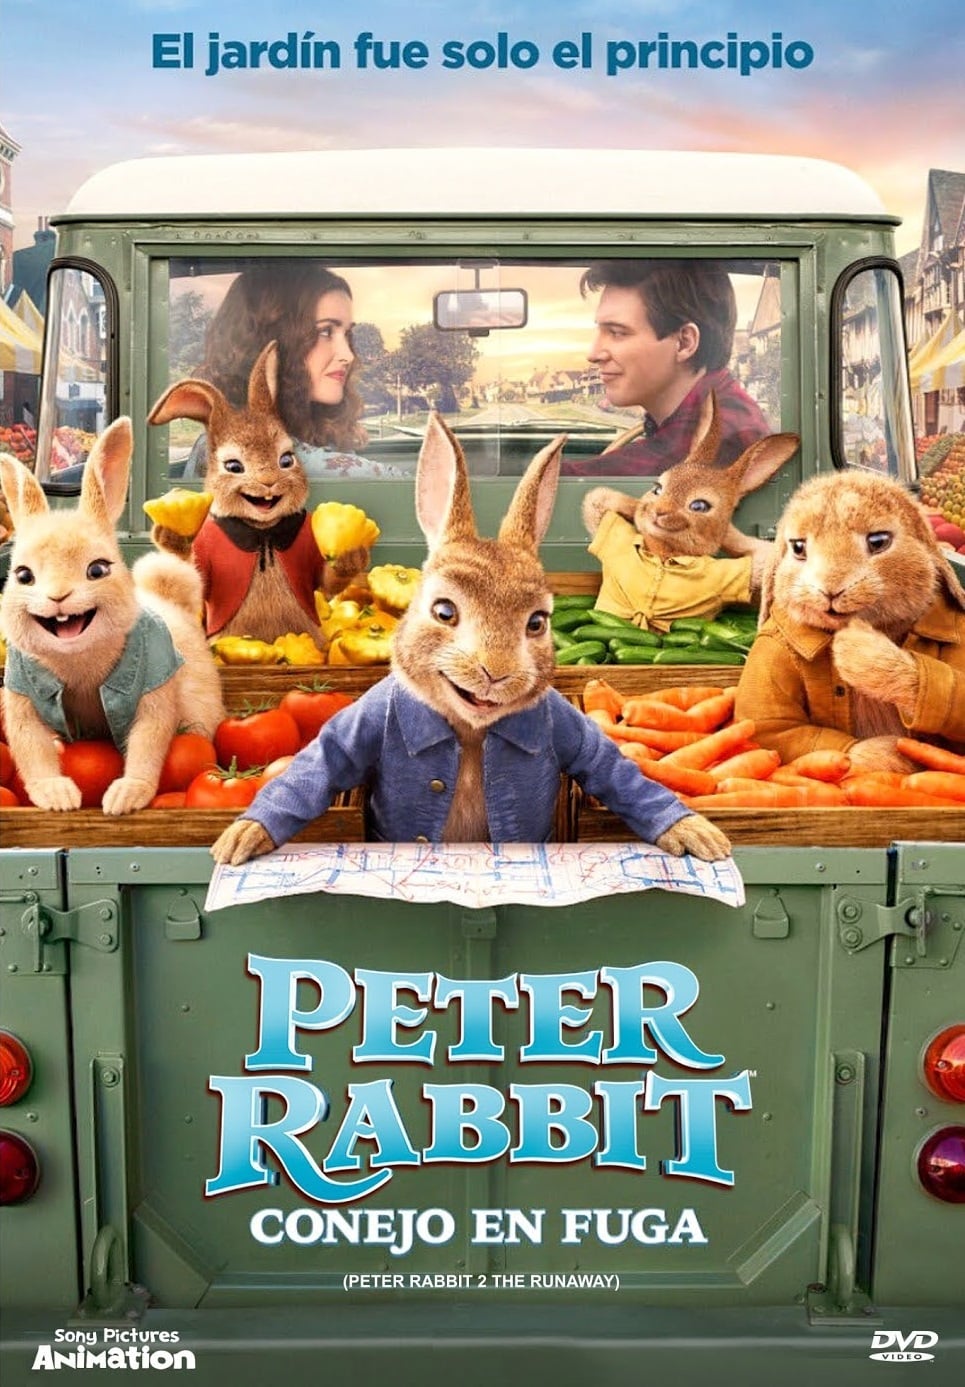 Peter Rabbit 2: Conejo en fuga